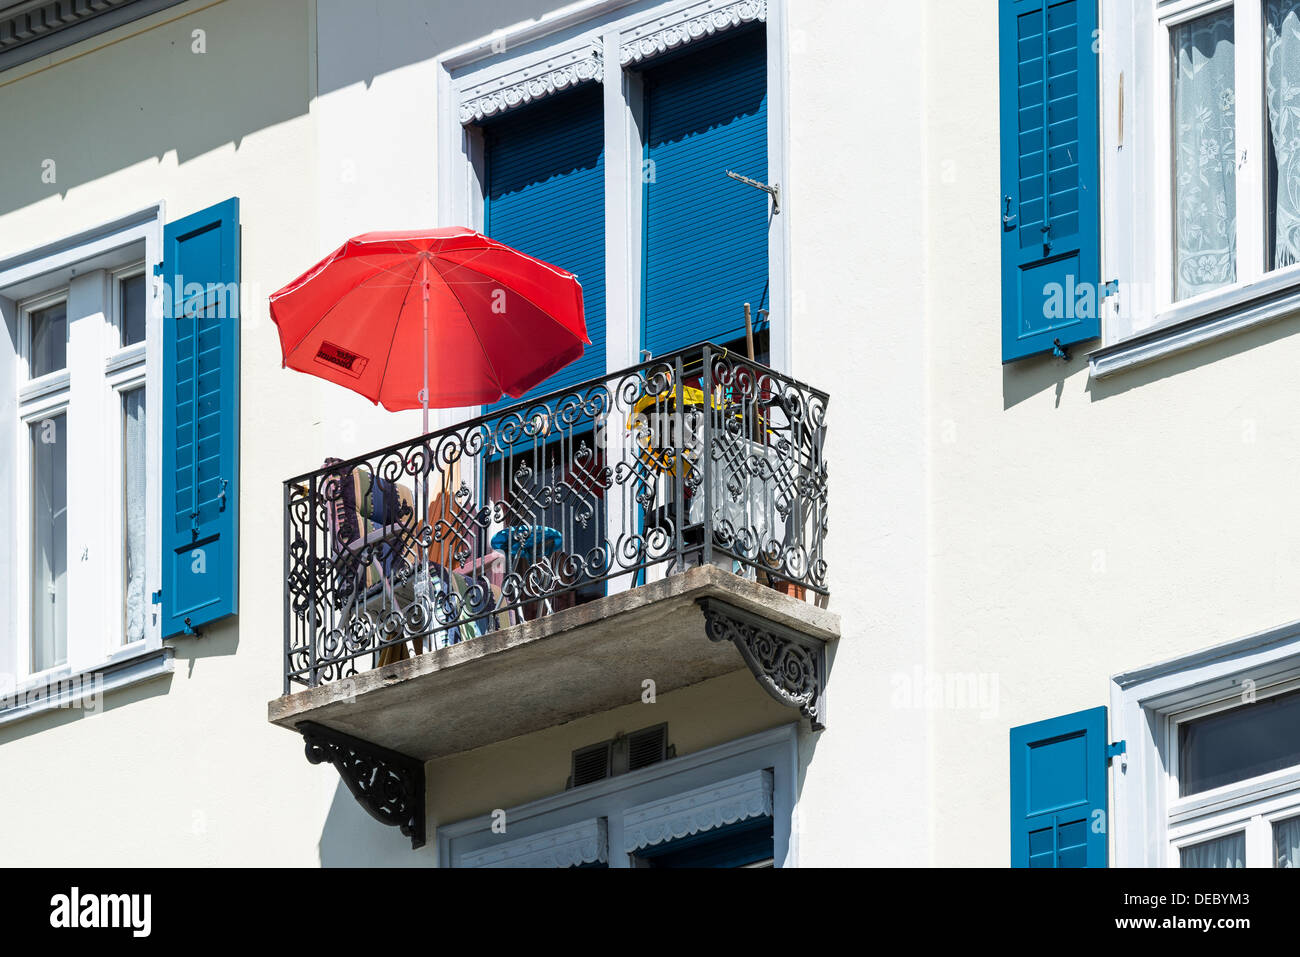 Balkon mit Sonne Regenschirm, Pontresina, Kanton Graubünden, Schweiz  Stockfotografie - Alamy